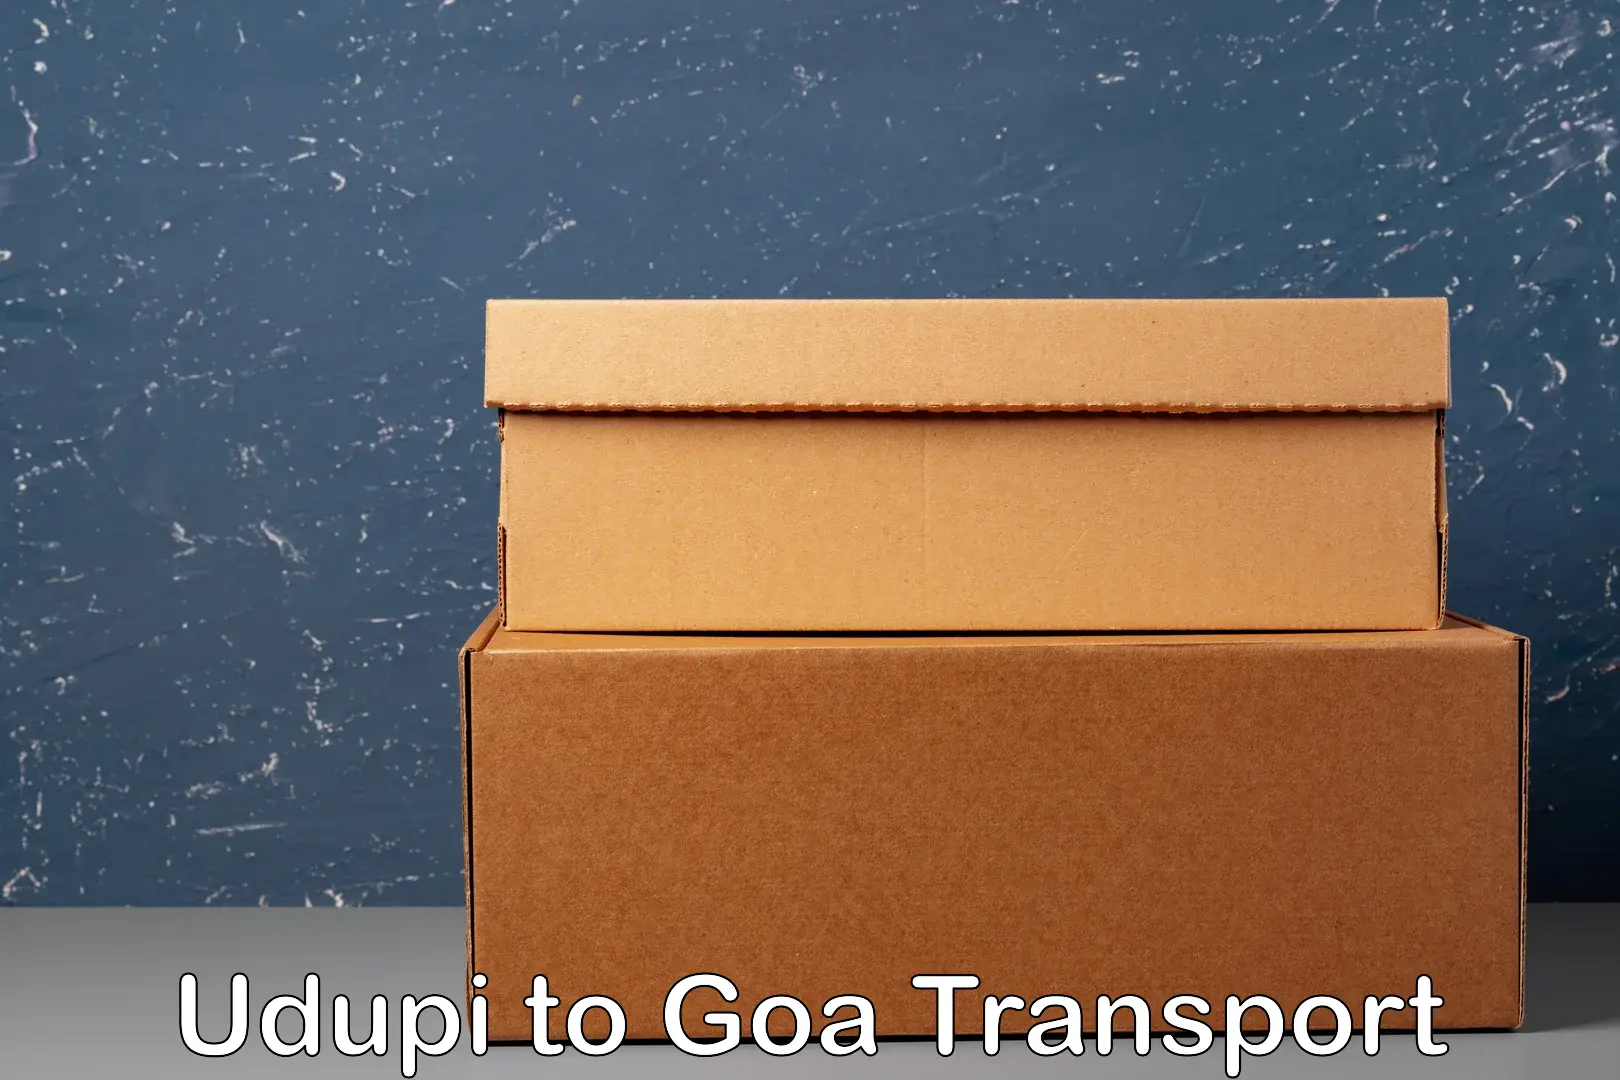 Shipping partner Udupi to NIT Goa